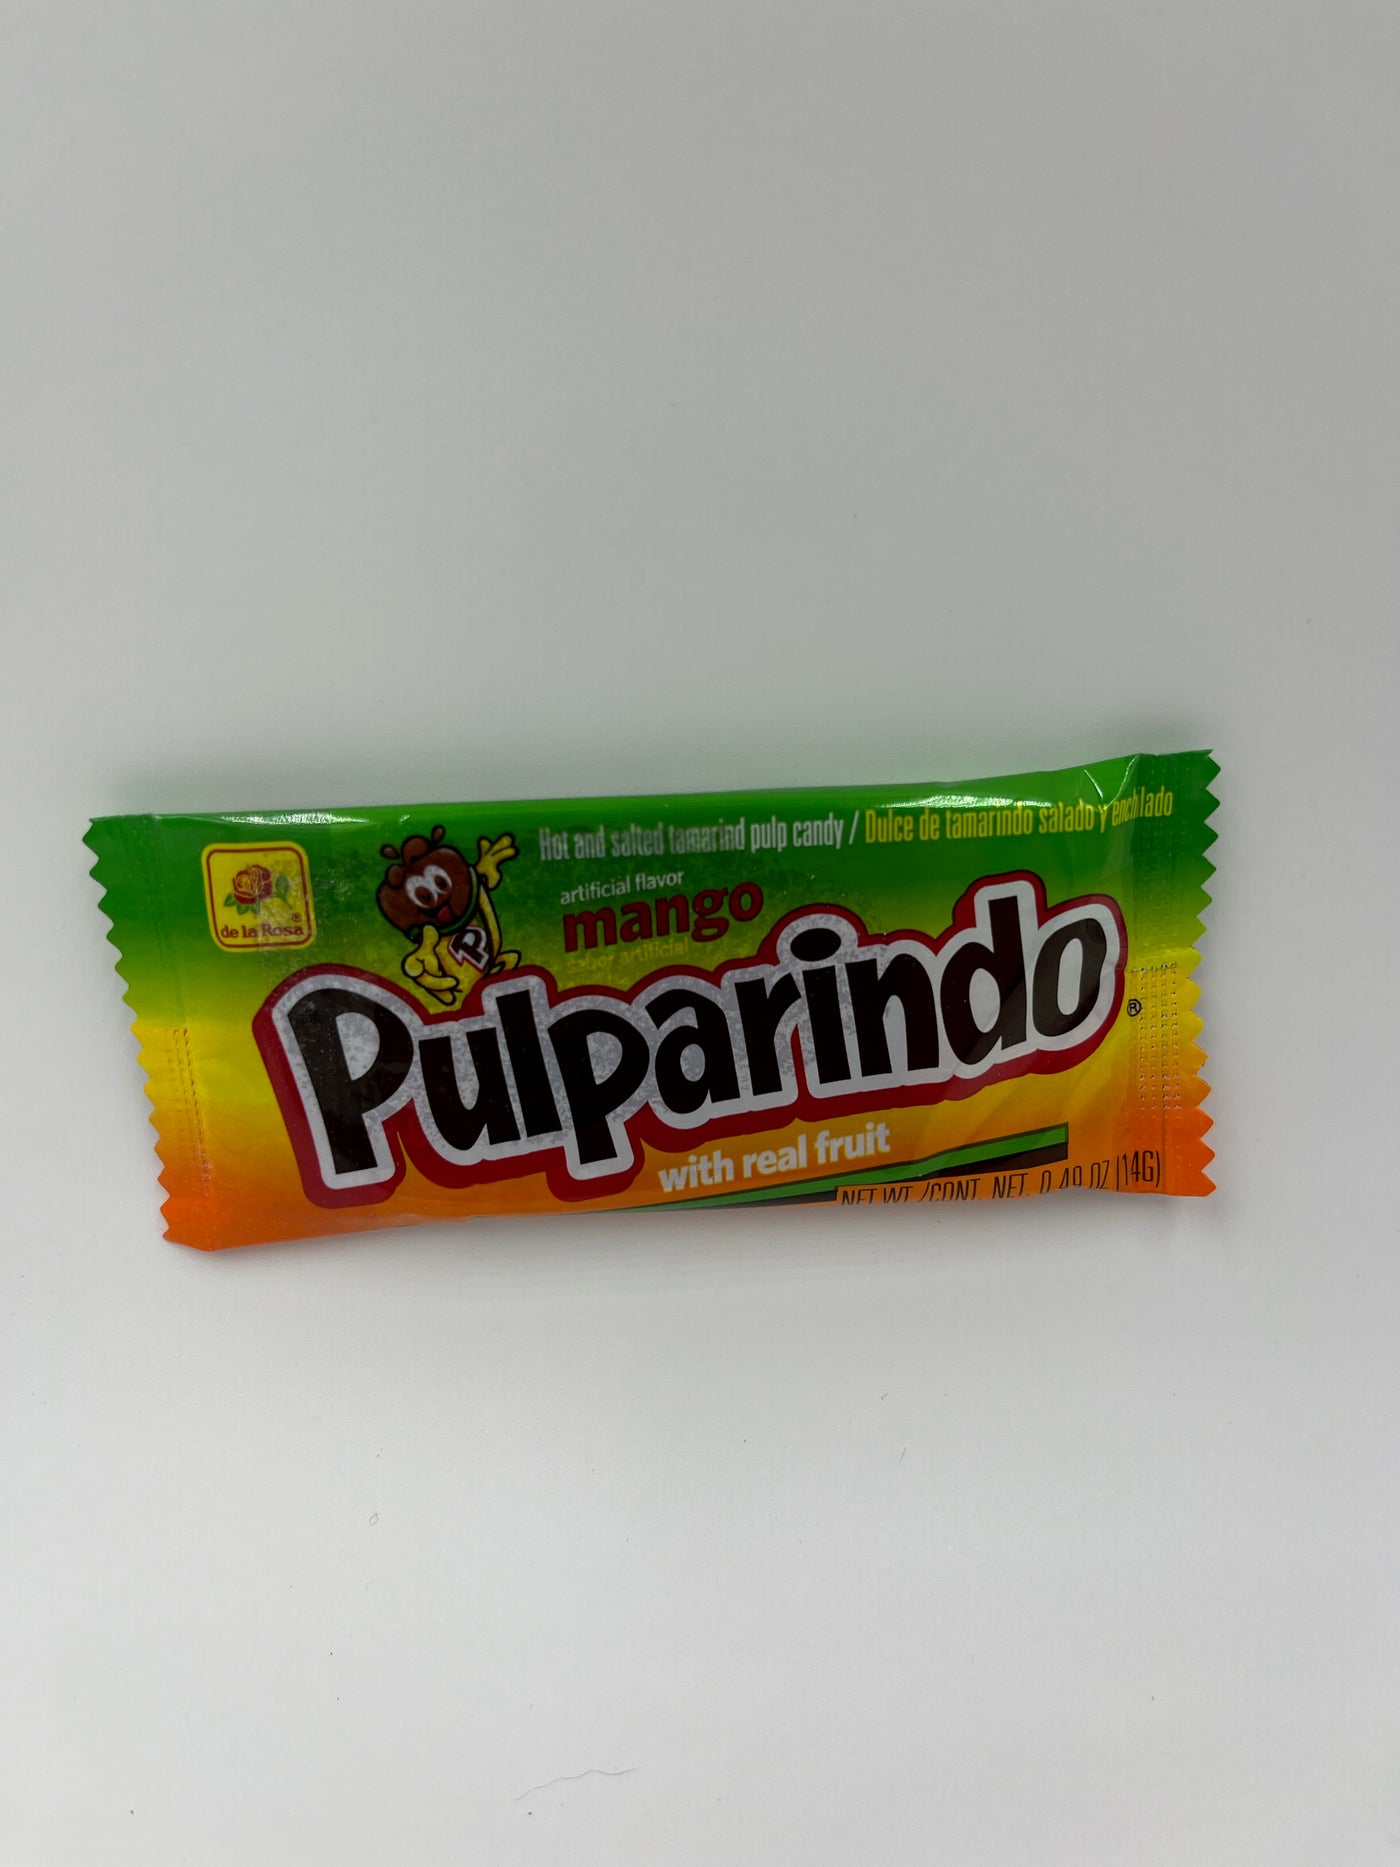 De La Rosa Pulparindo Tamarind Candy Mango (Mexico)